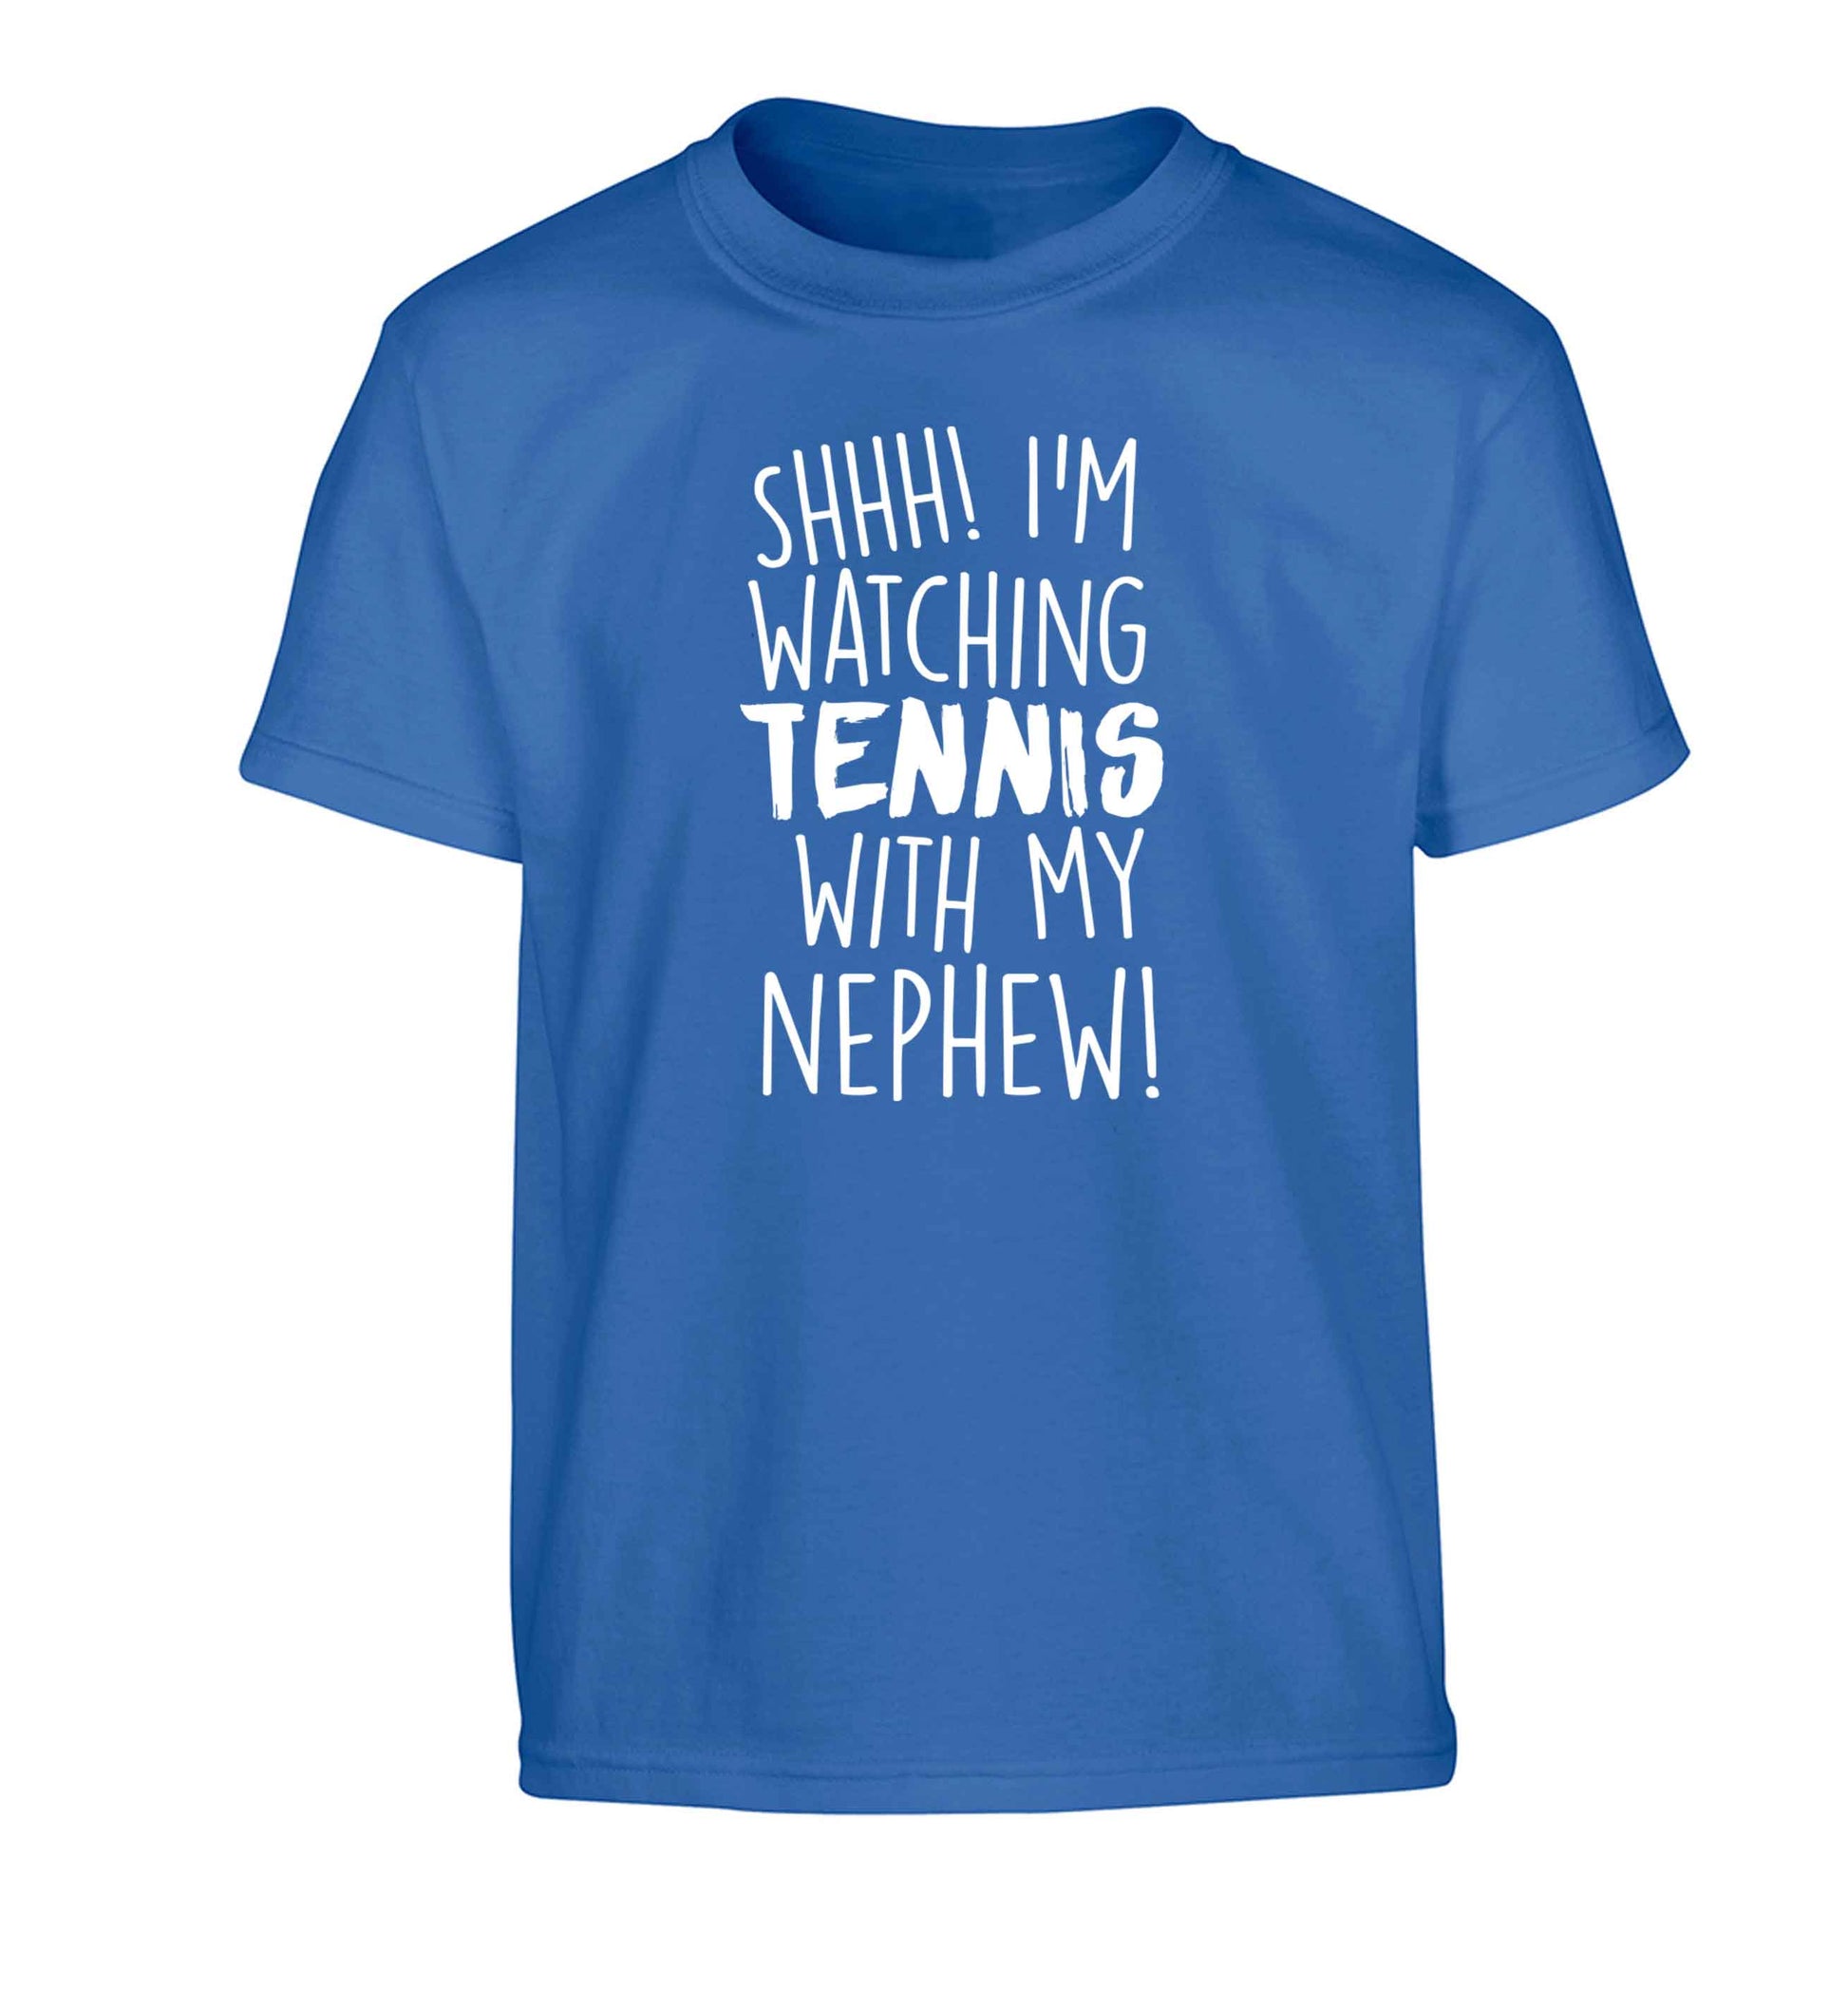 Shh! I'm watching tennis with my nephew! Children's blue Tshirt 12-13 Years